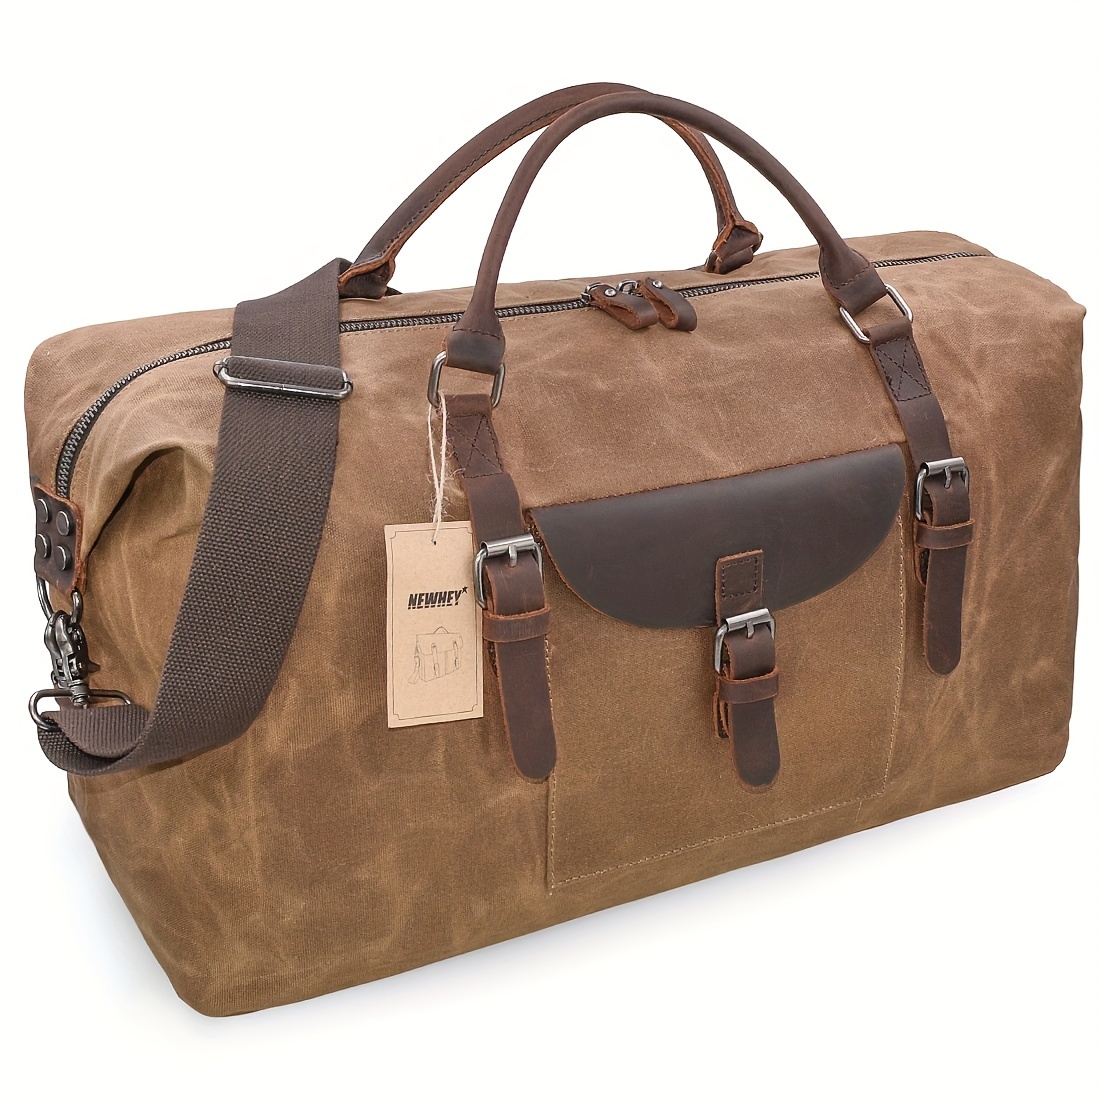 

Oversized Travel Duffel Bag Waterproof Canvas Genuine Leather Weekend Bag Weekender Overnight Carryon Hand Bag